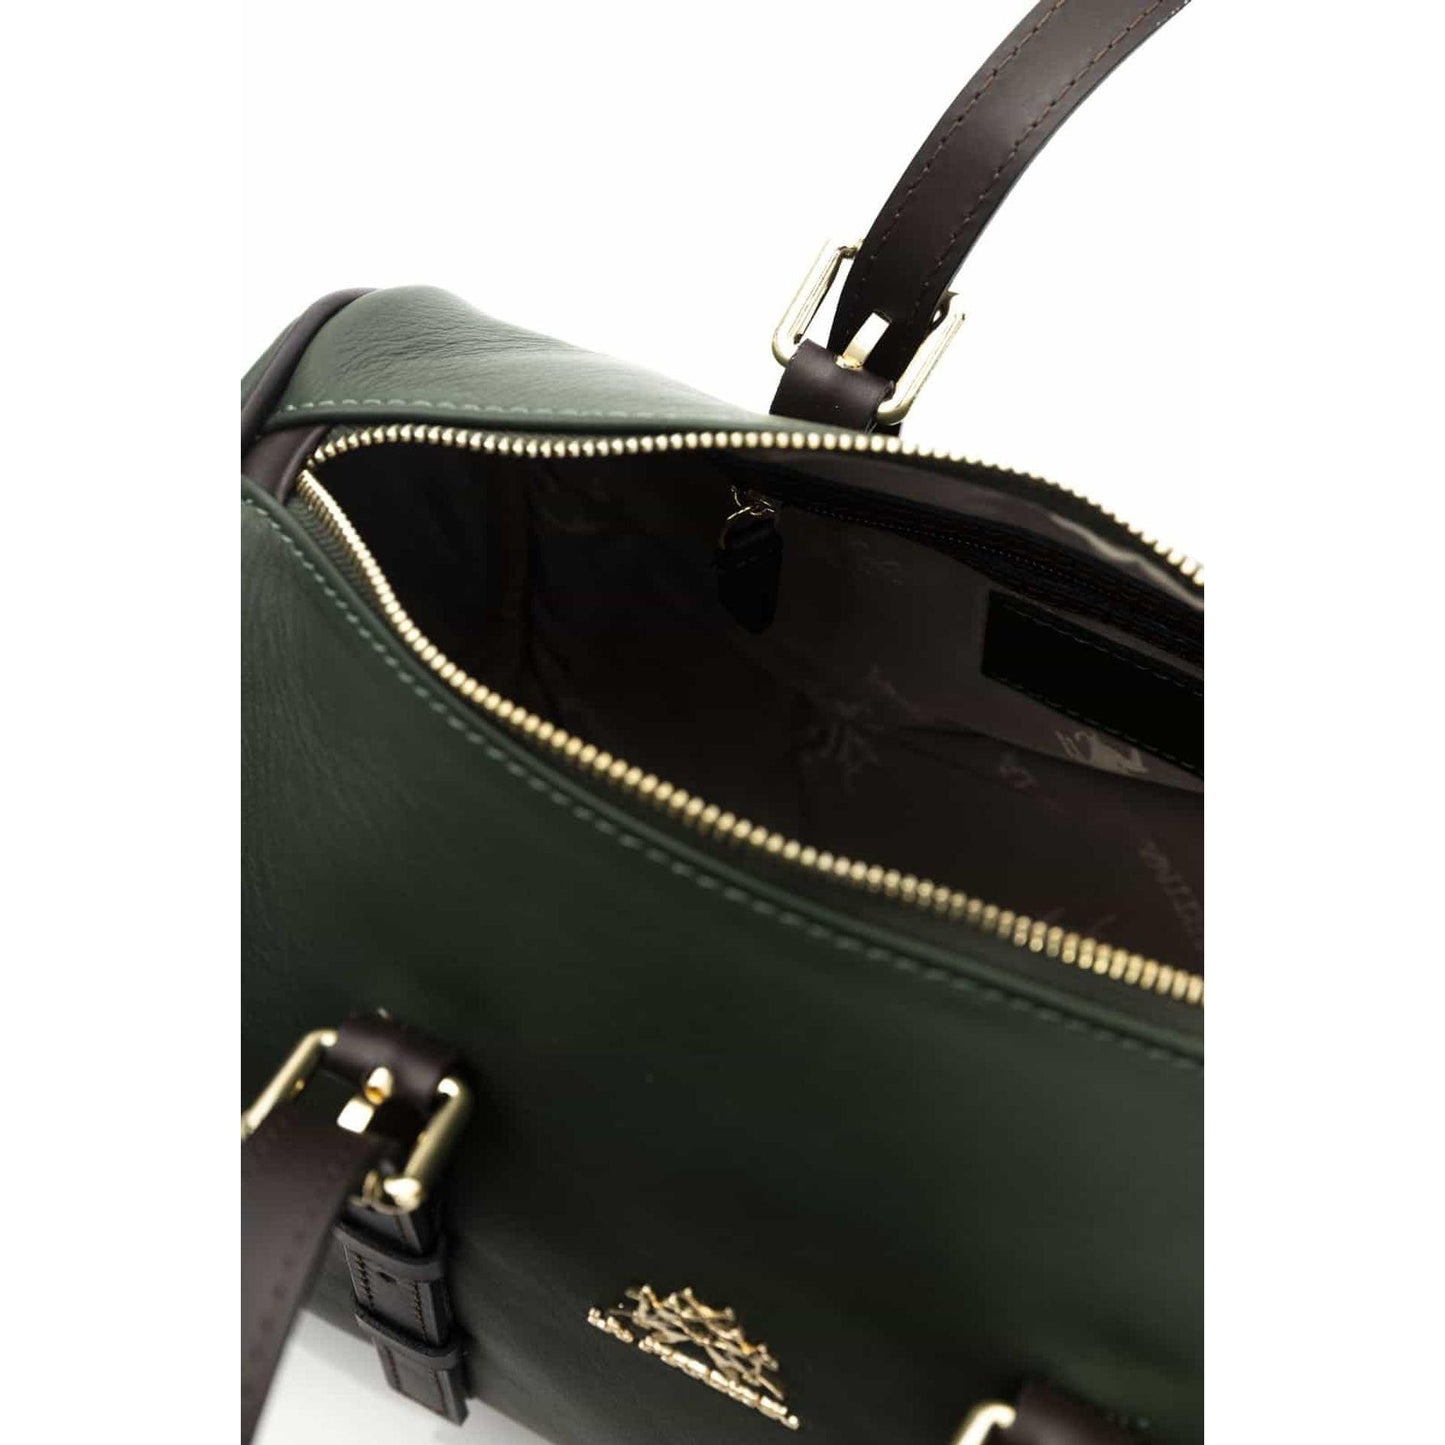 La Martina Travel bags - Duffel Bag - Travel bags - Guocali